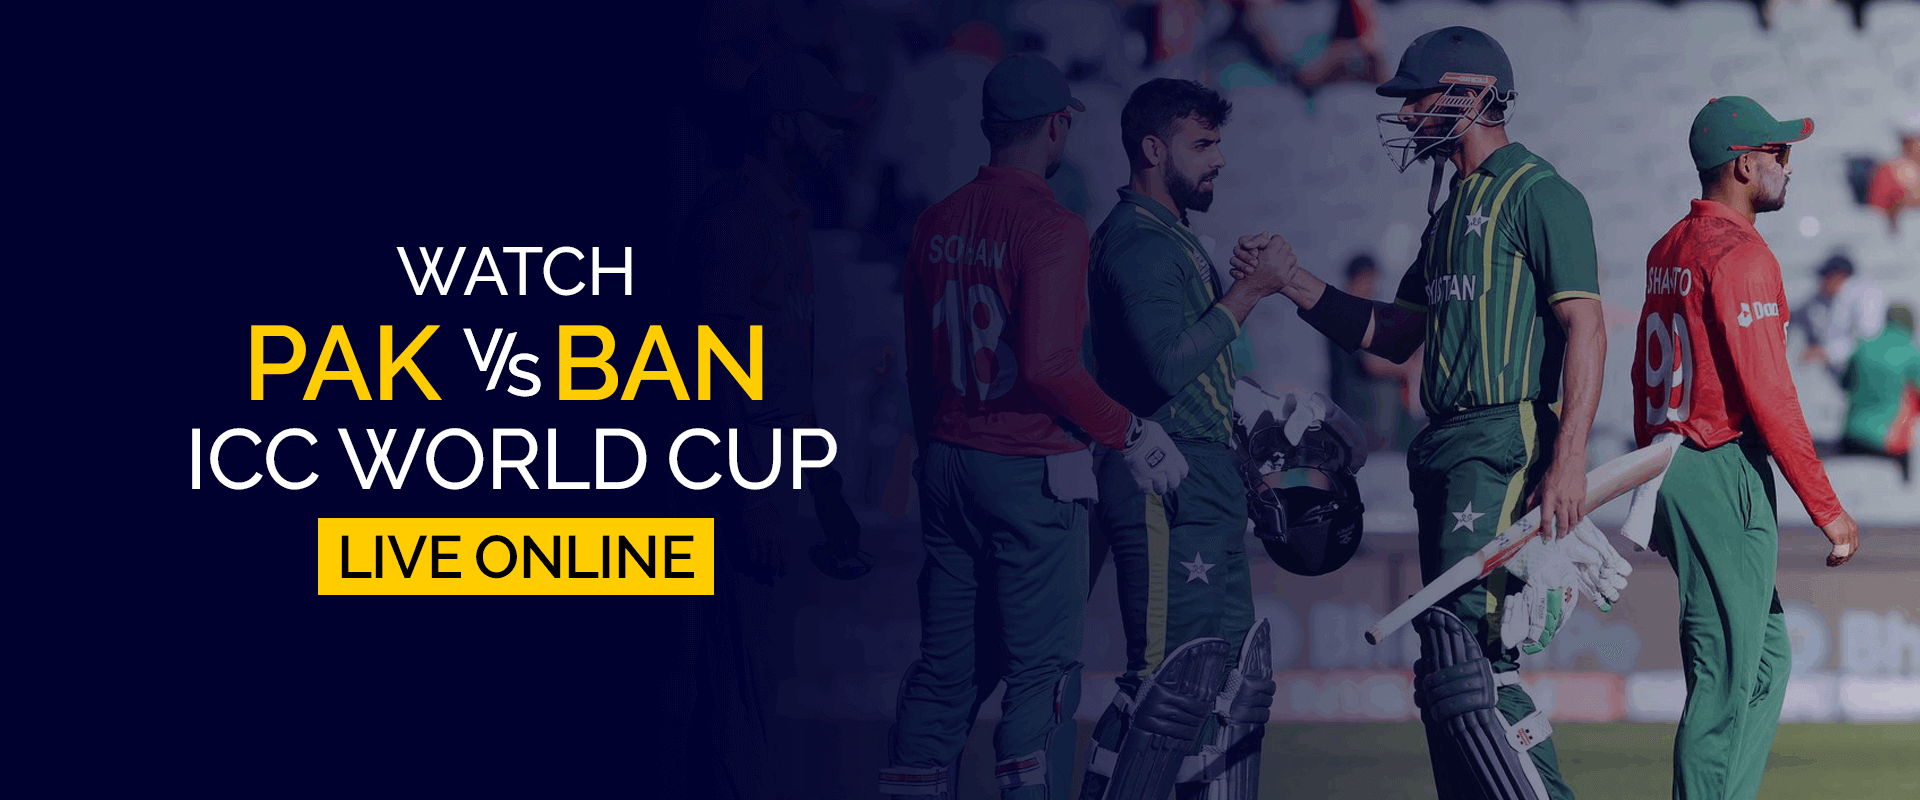 Смотрите матч чемпионата мира ICC Пакистан – Бангладеш в прямом эфире онлайн